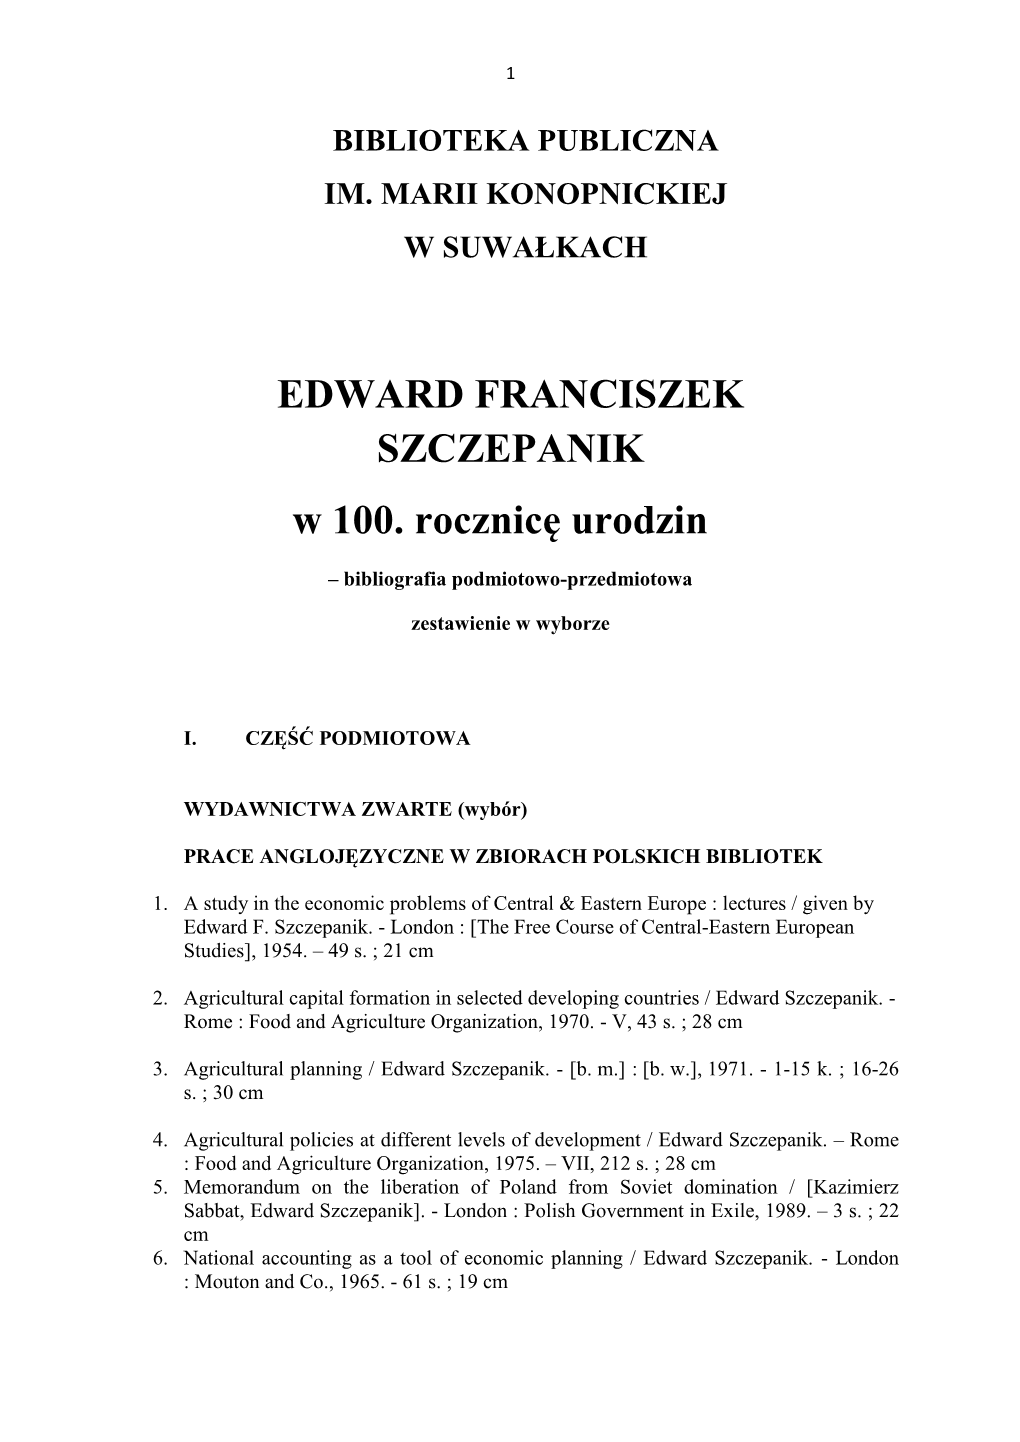 EDWARD FRANCISZEK SZCZEPANIK W 100. Rocznicę Urodzin